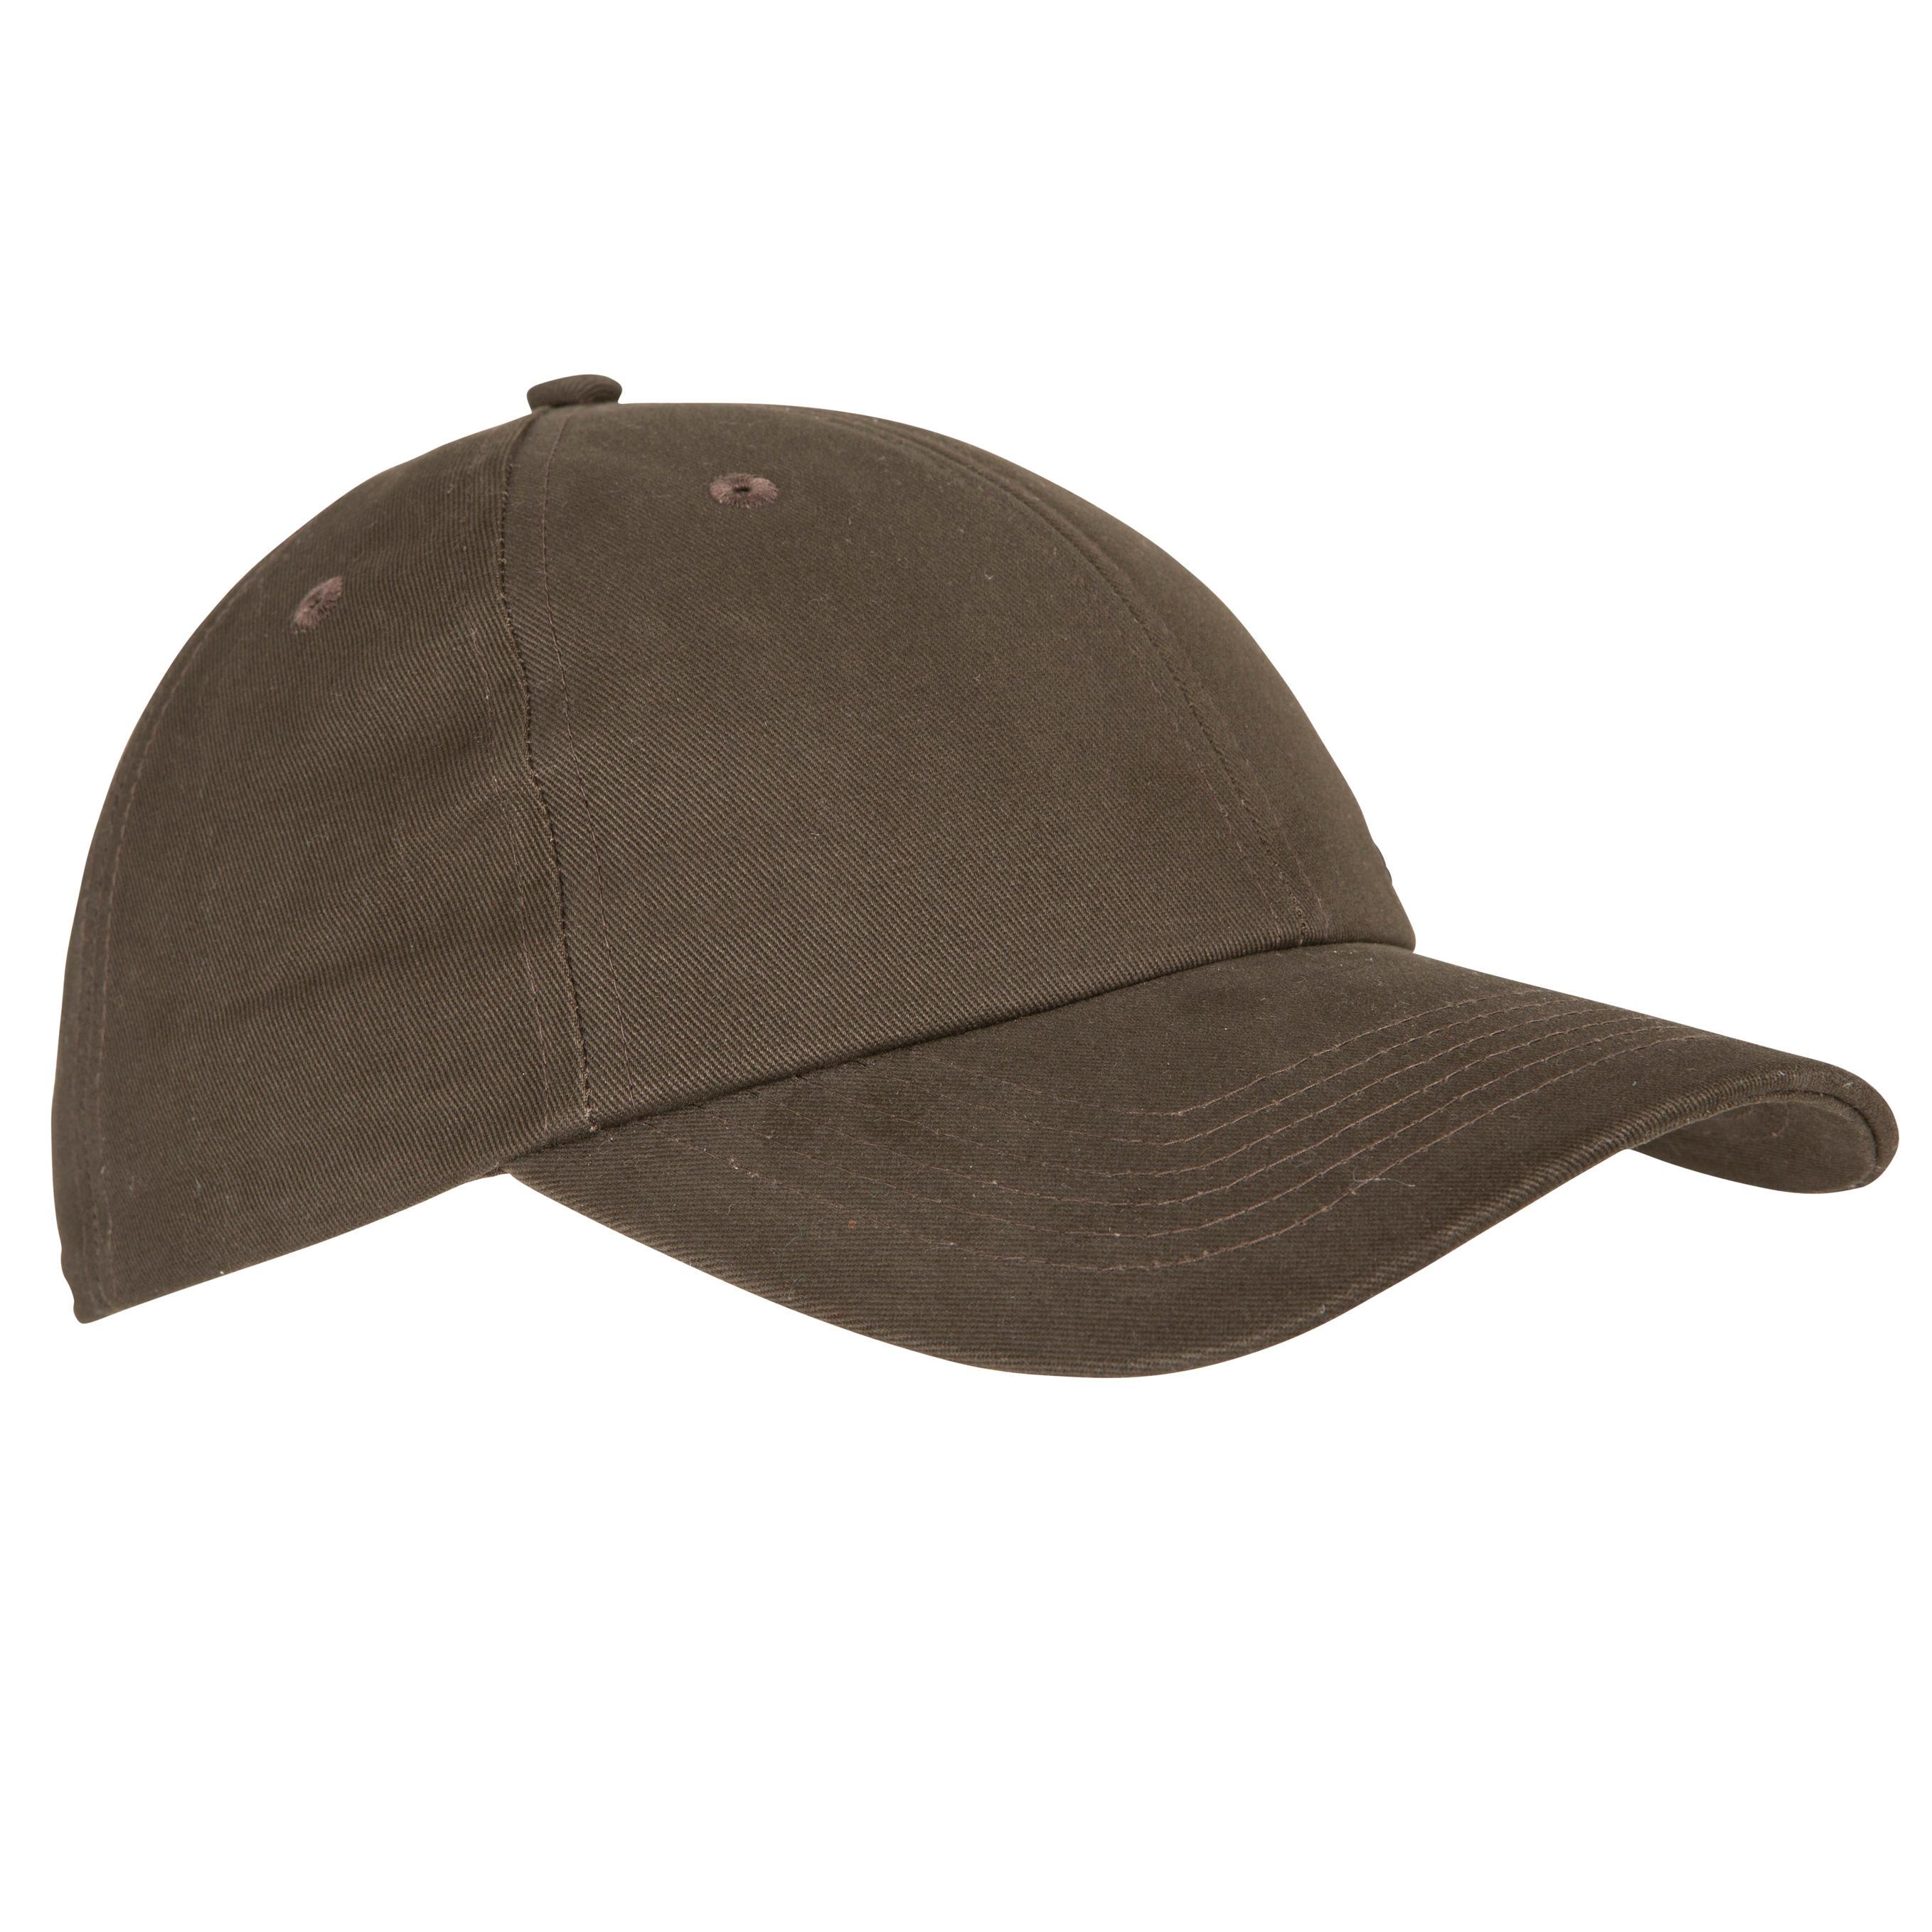 [ด่วน!! โปรโมชั่นมีจำนวนจำกัด]หมวกสำหรับการส่องสัตว์รุ่น STEPPE 100 (สีน้ำตาล)